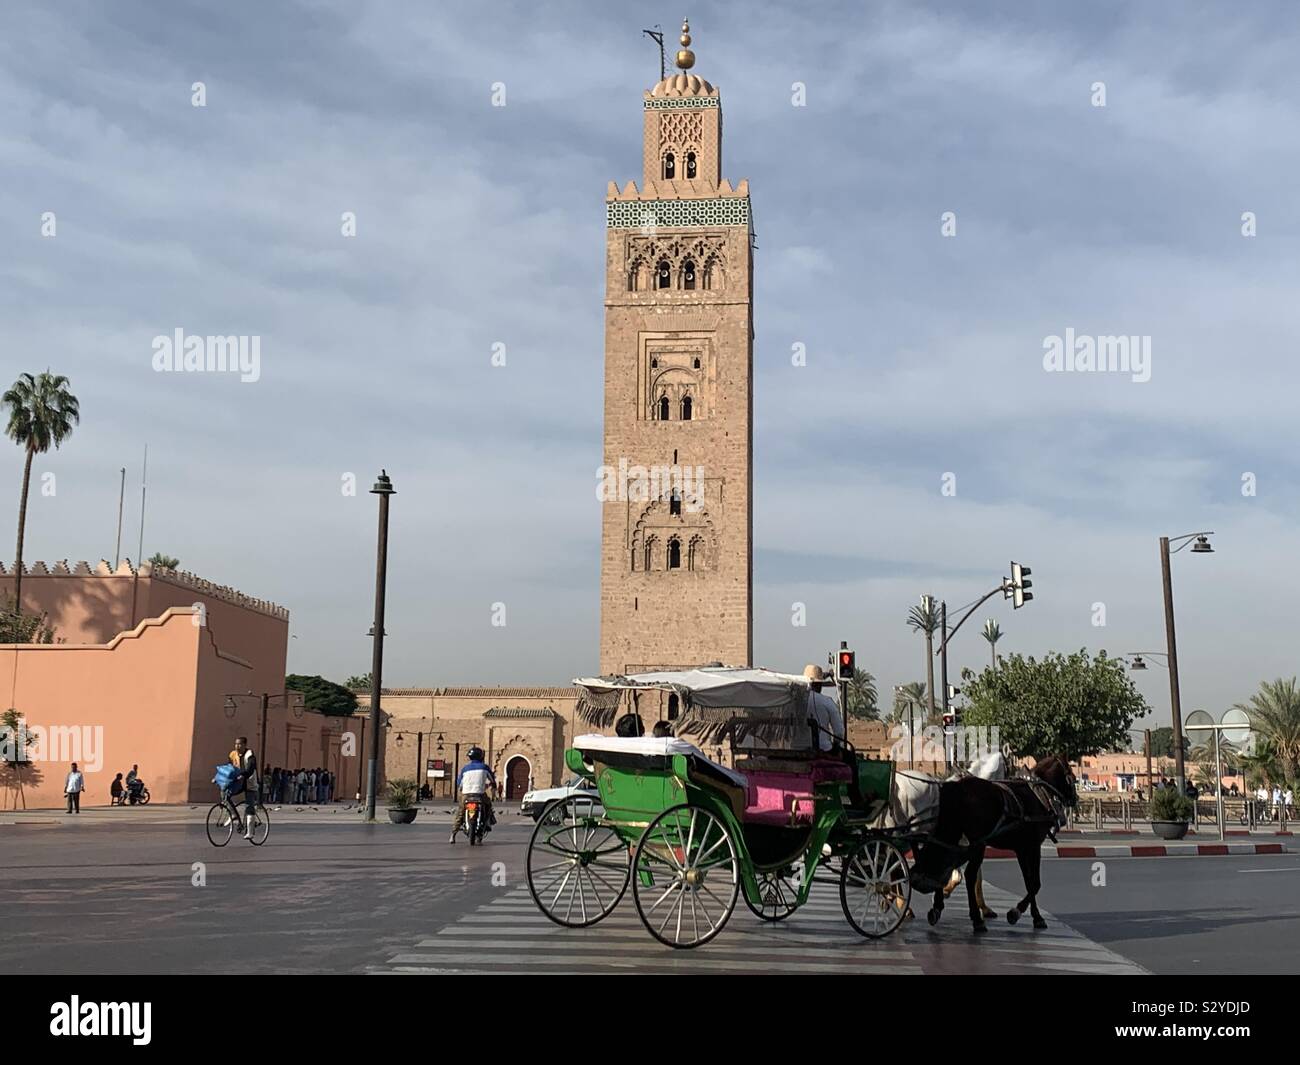 The Koutoubia Mosque. Marrakech, Morocco Stock Photo